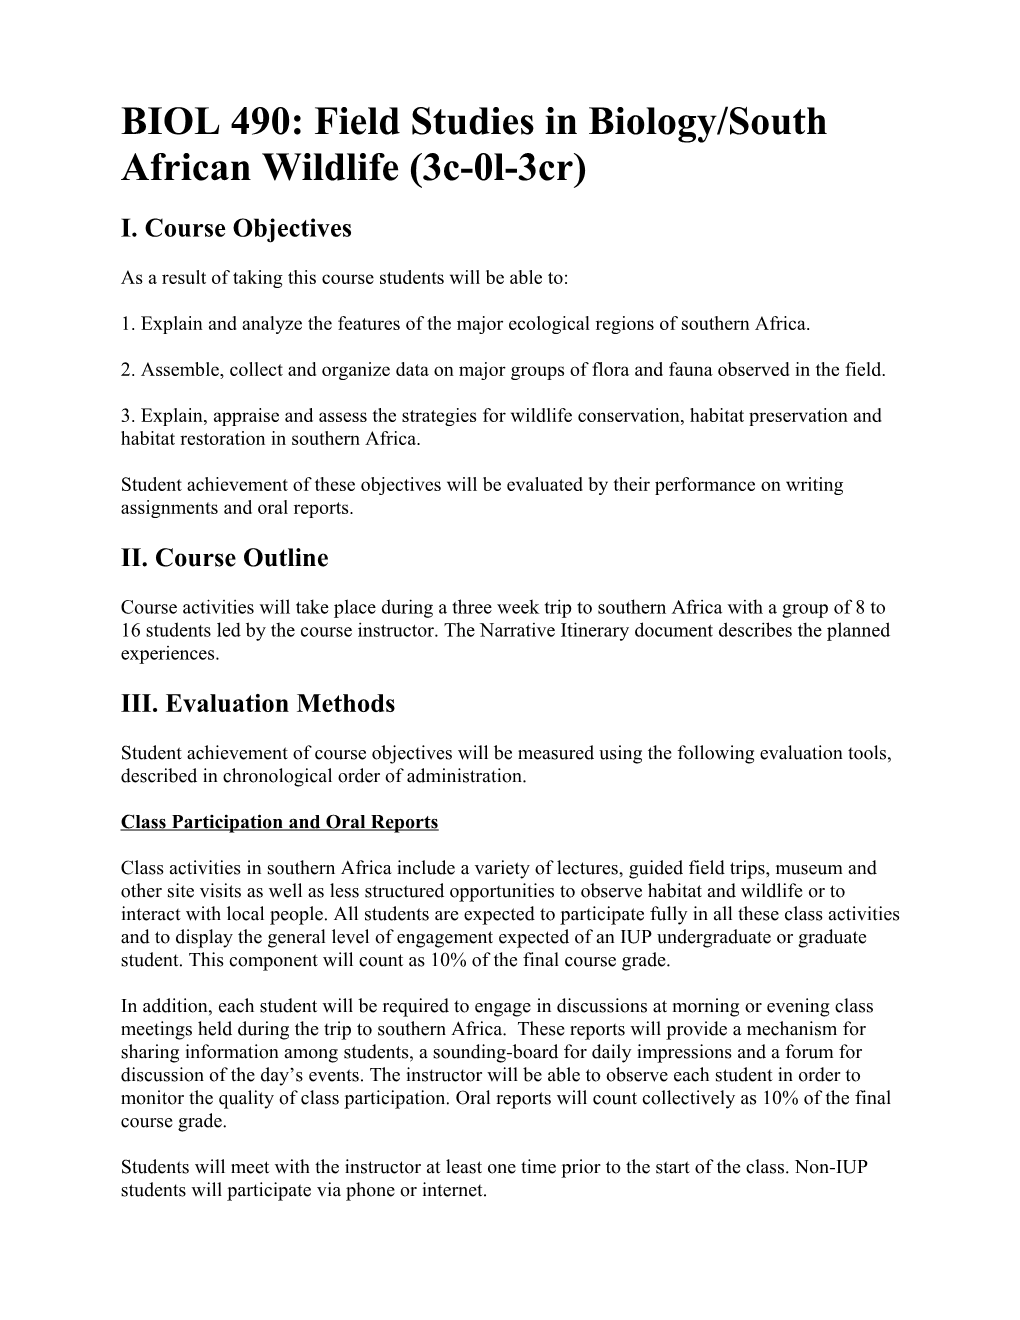 BIOL 490: Field Studies in Biology/South African Wildlife (3C-0L-3Cr)